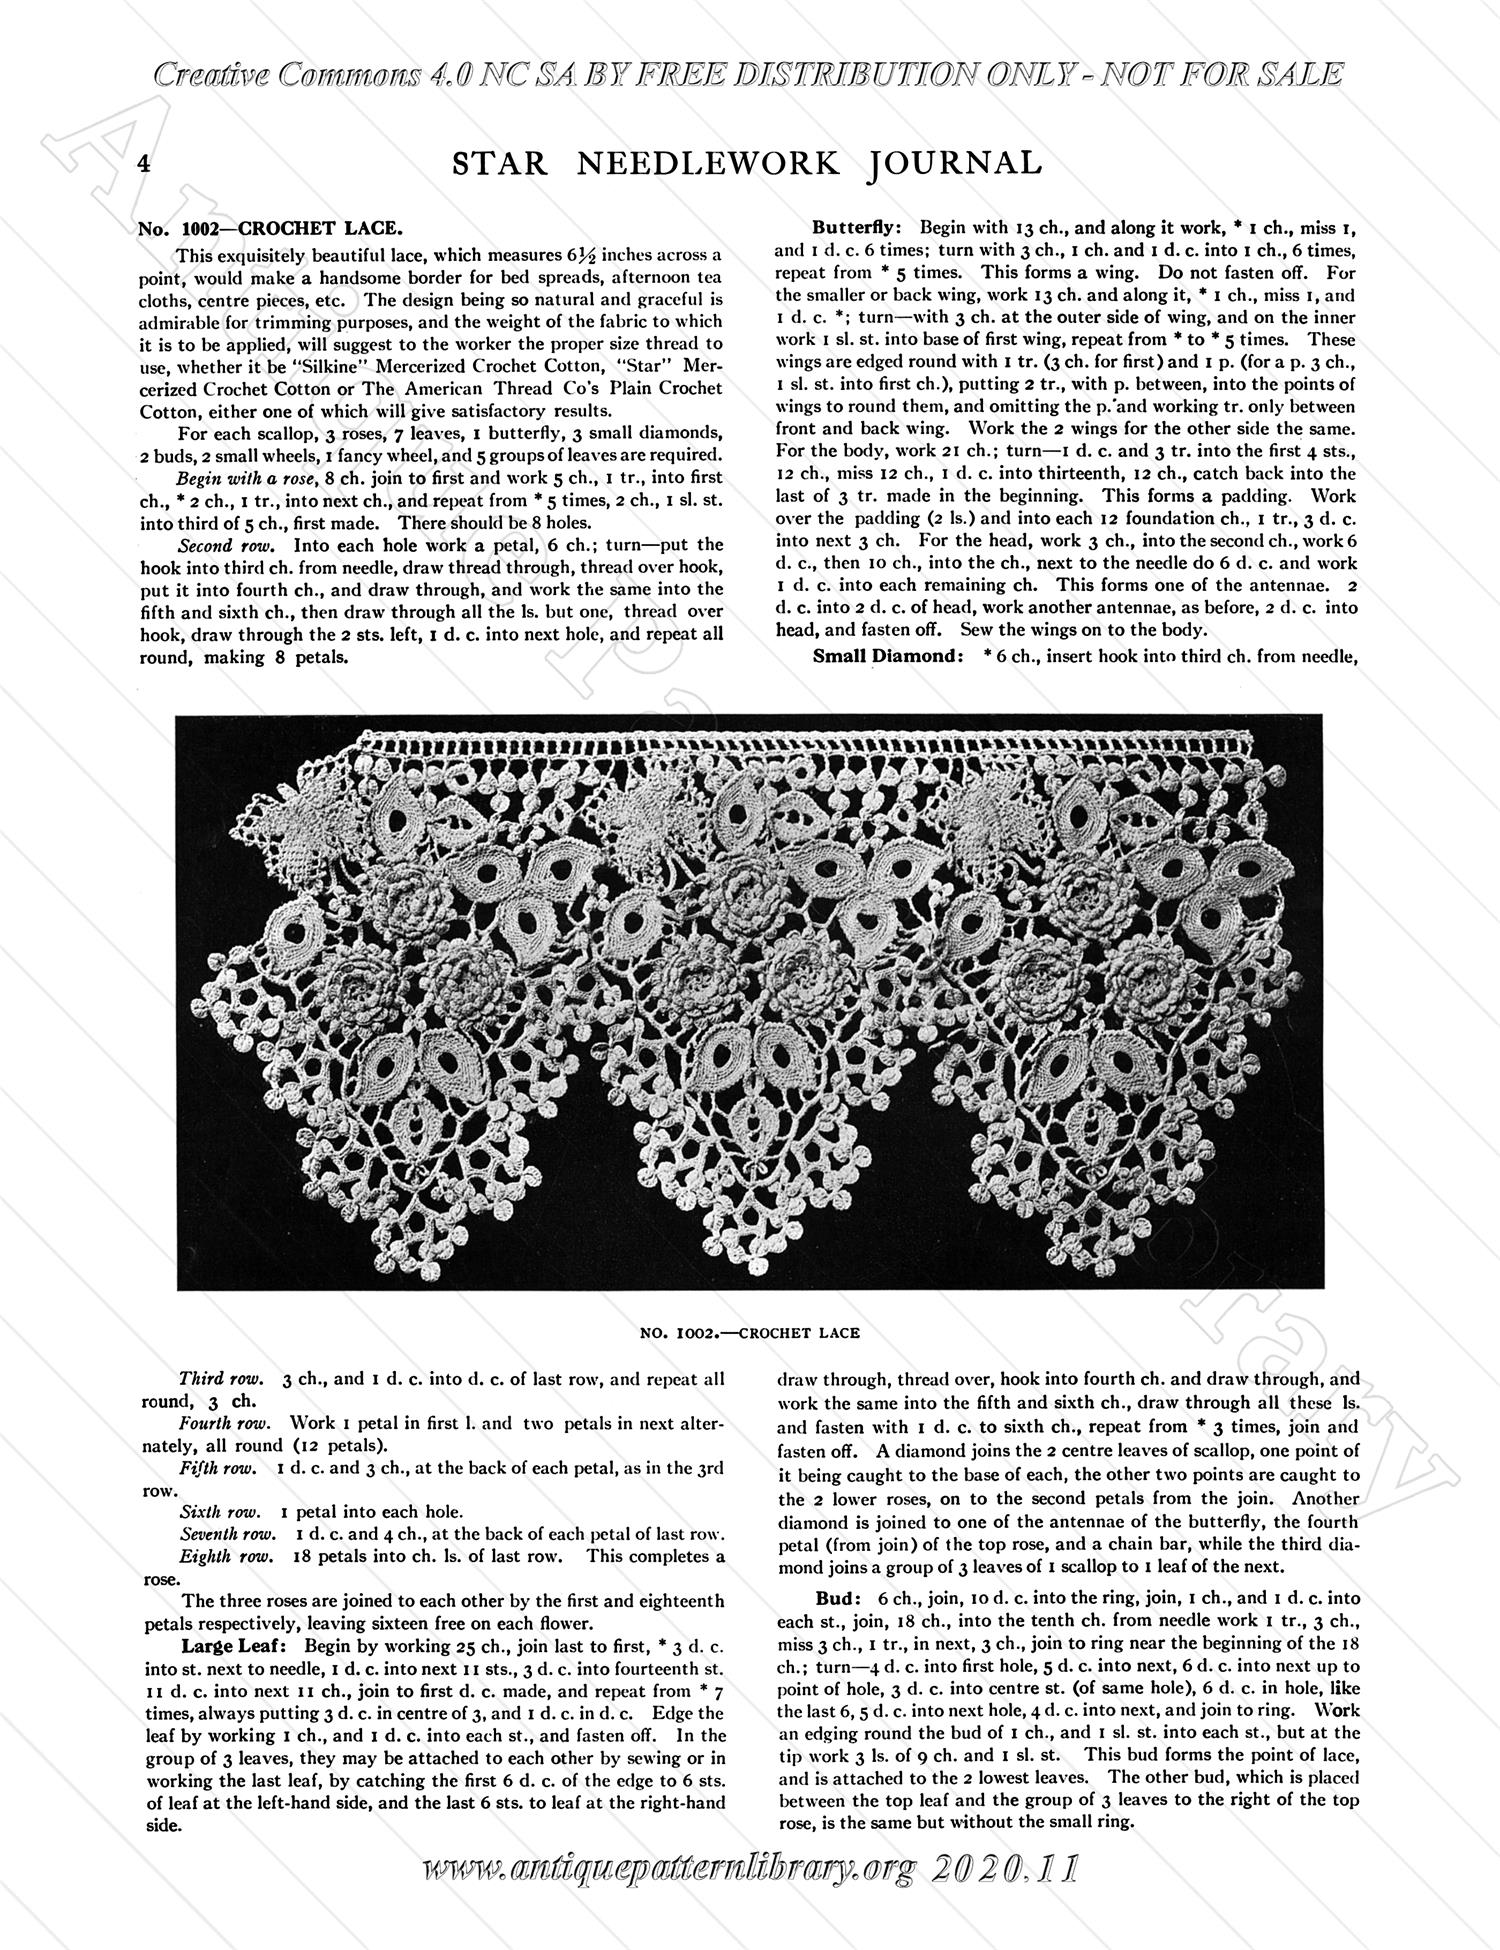 F-WM135 Star Needlework Journal